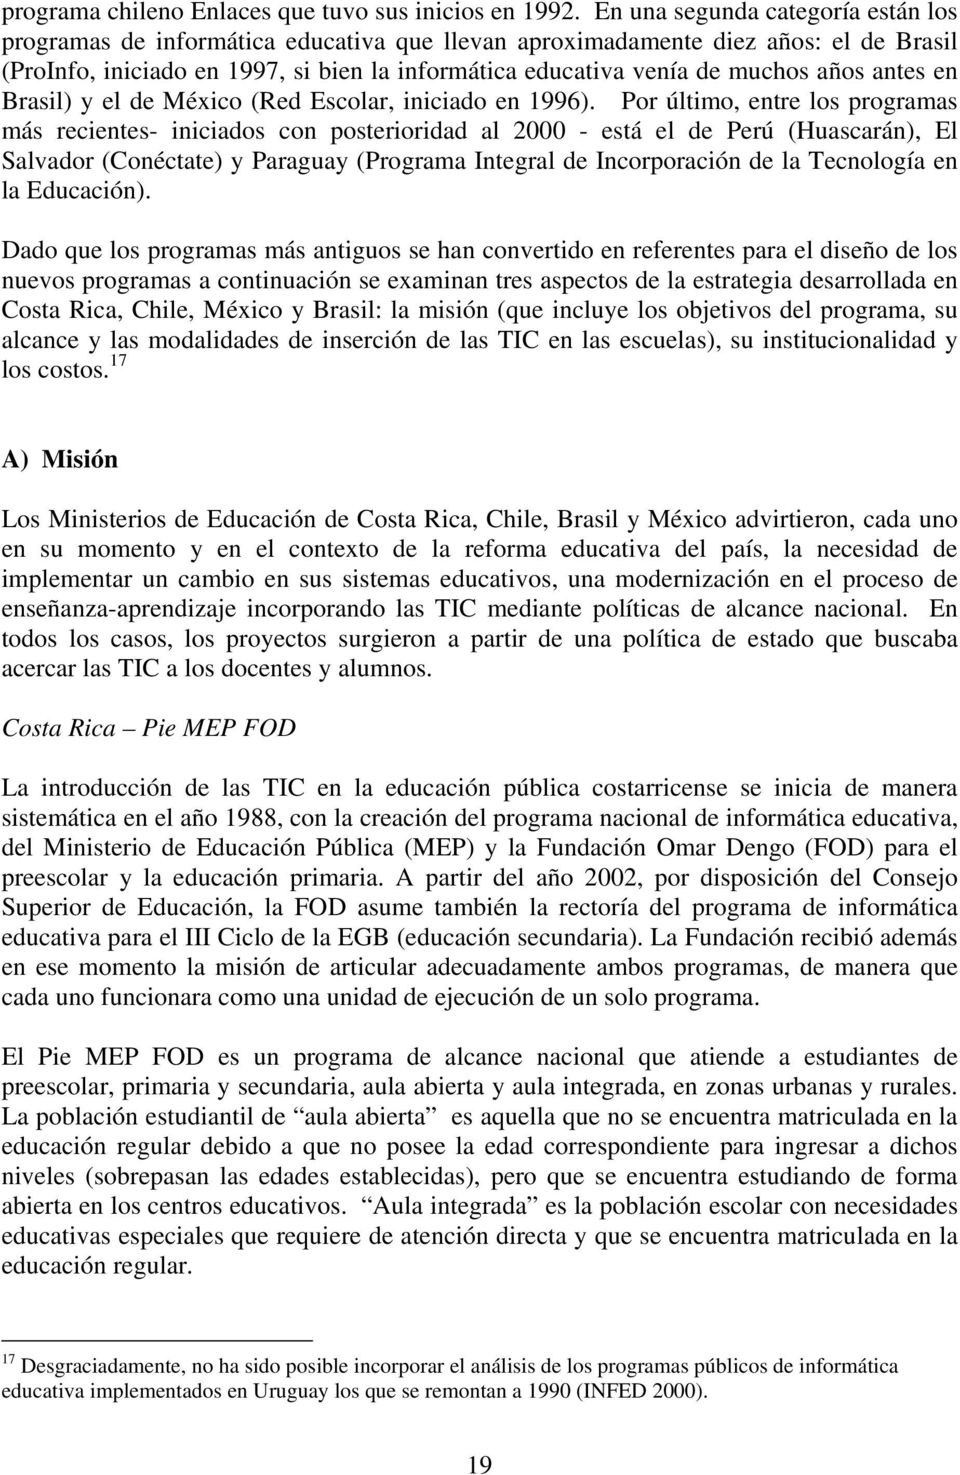 años antes en Brasil) y el de México (Red Escolar, iniciado en 1996).